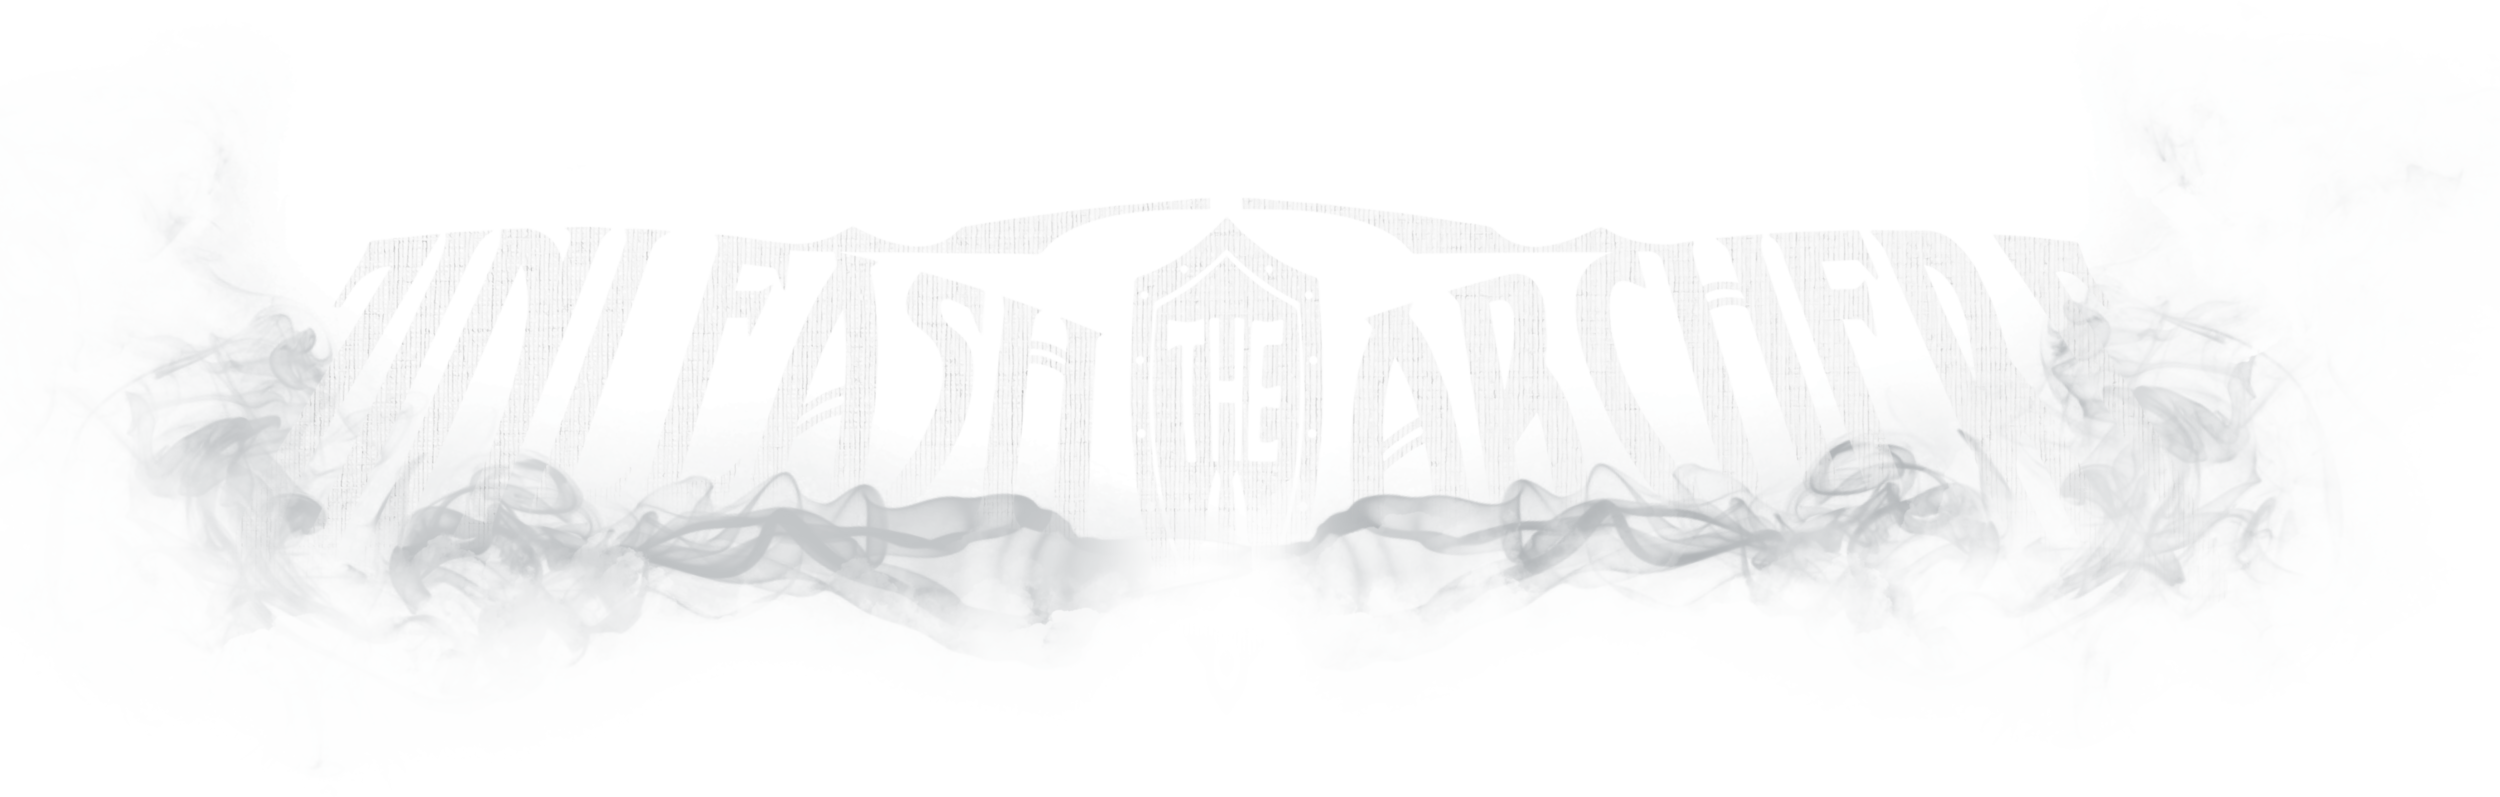 Unleash the Archers - Wikipedia